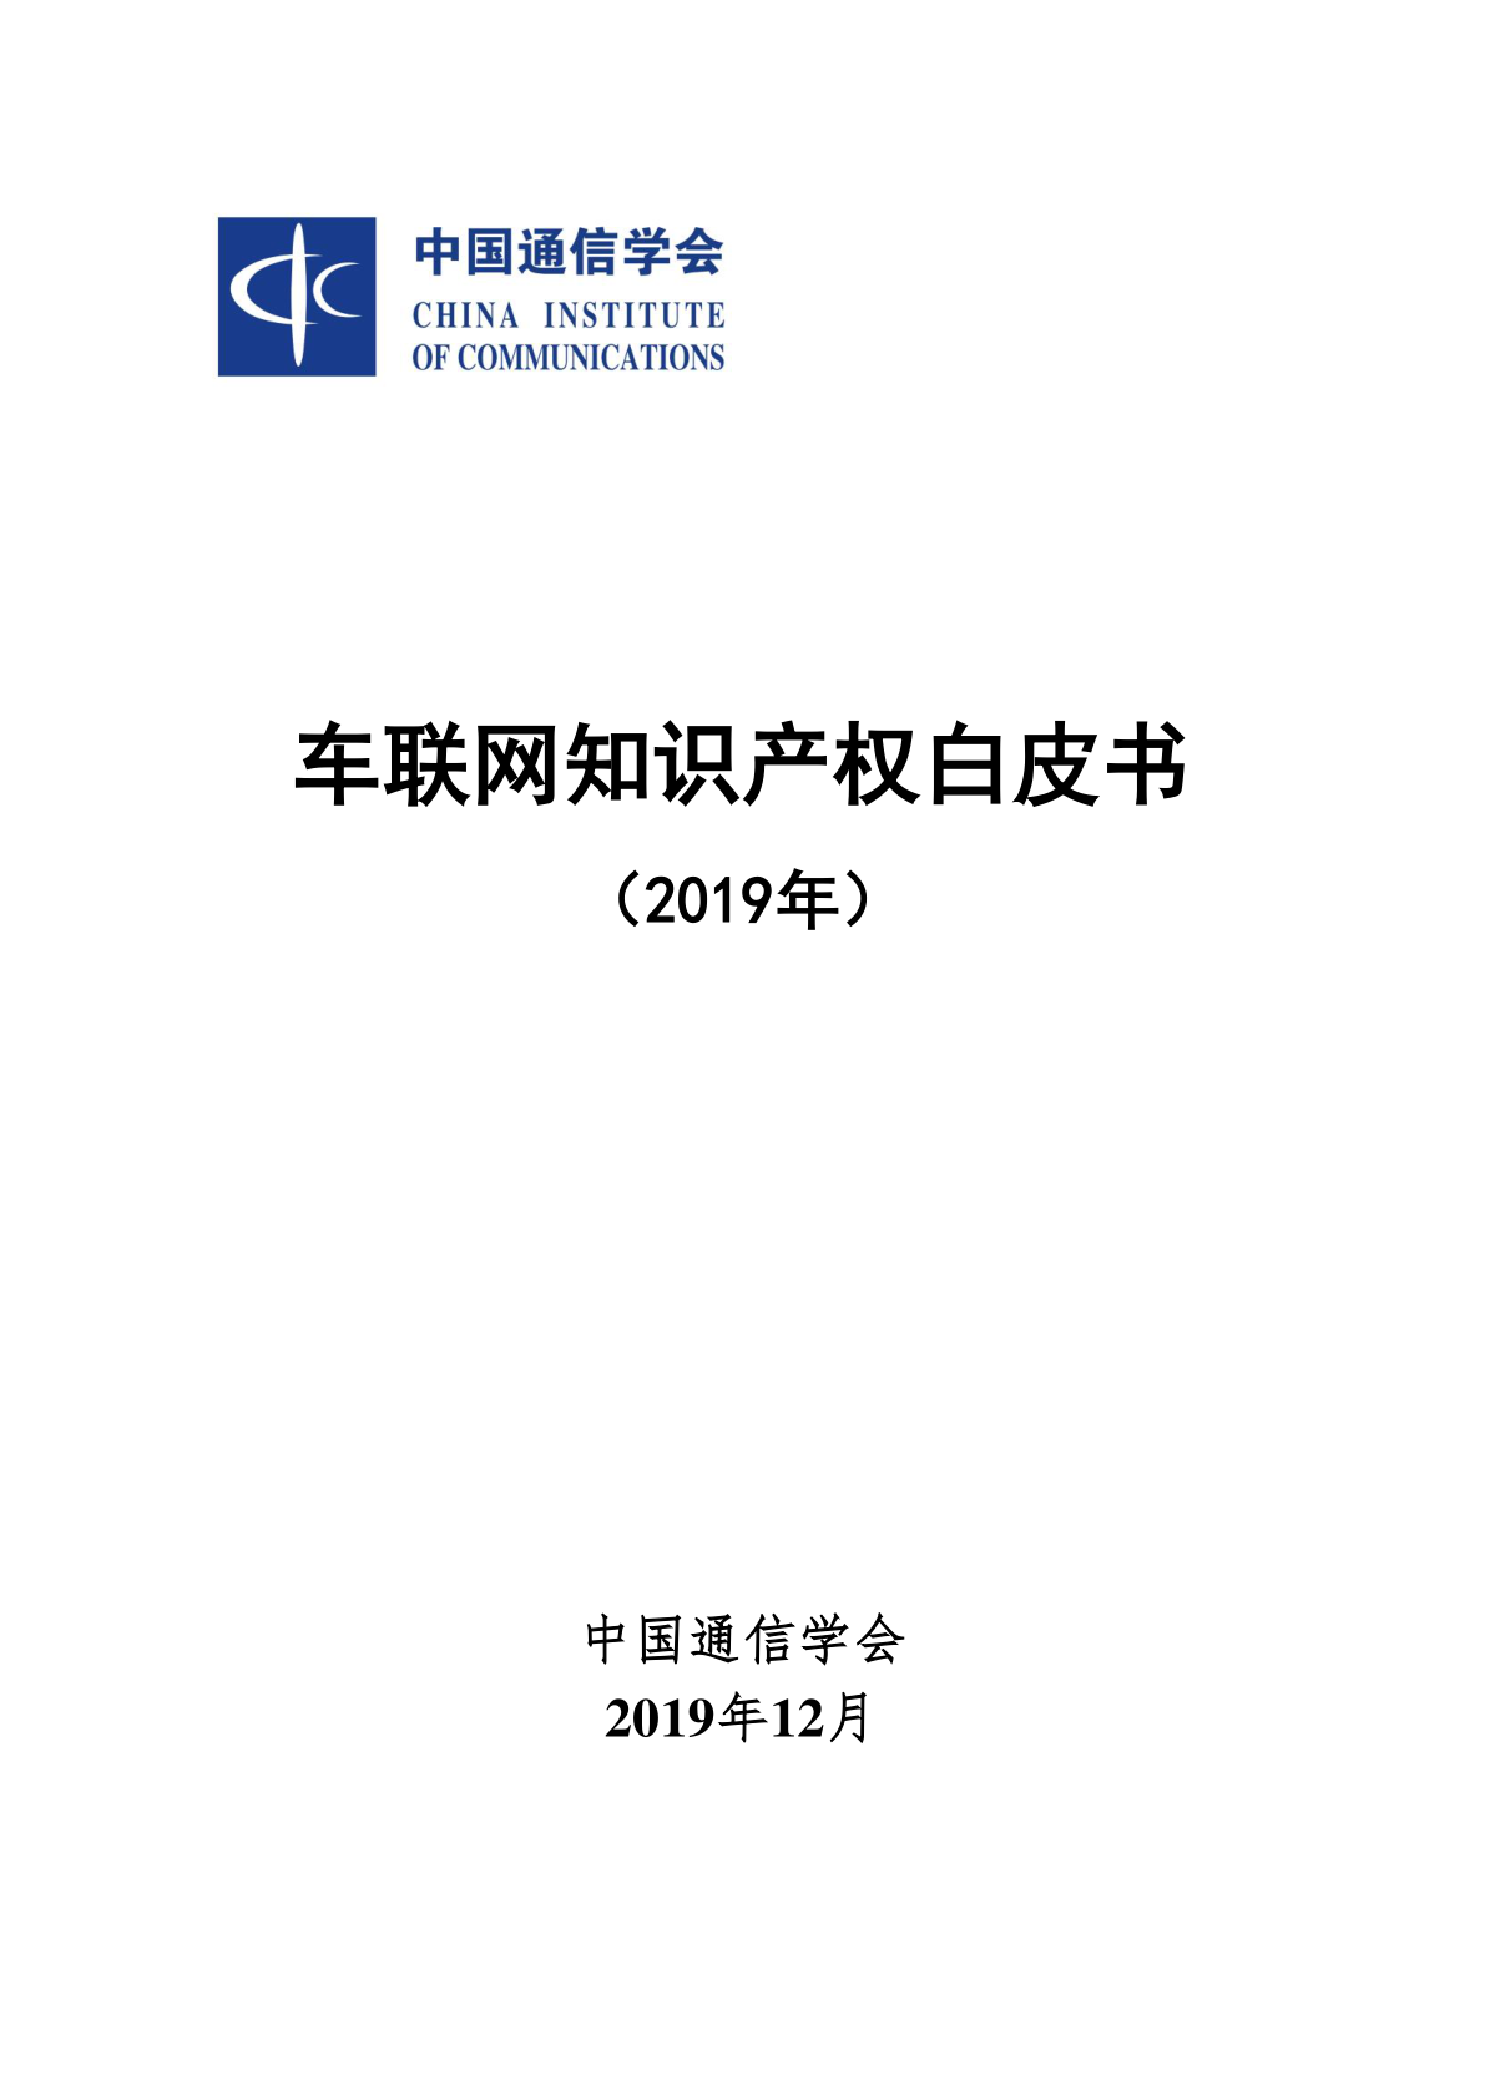 中国通信学会 车联网知识产权白皮书 19 数据报告pdf下载 镝数聚dydata